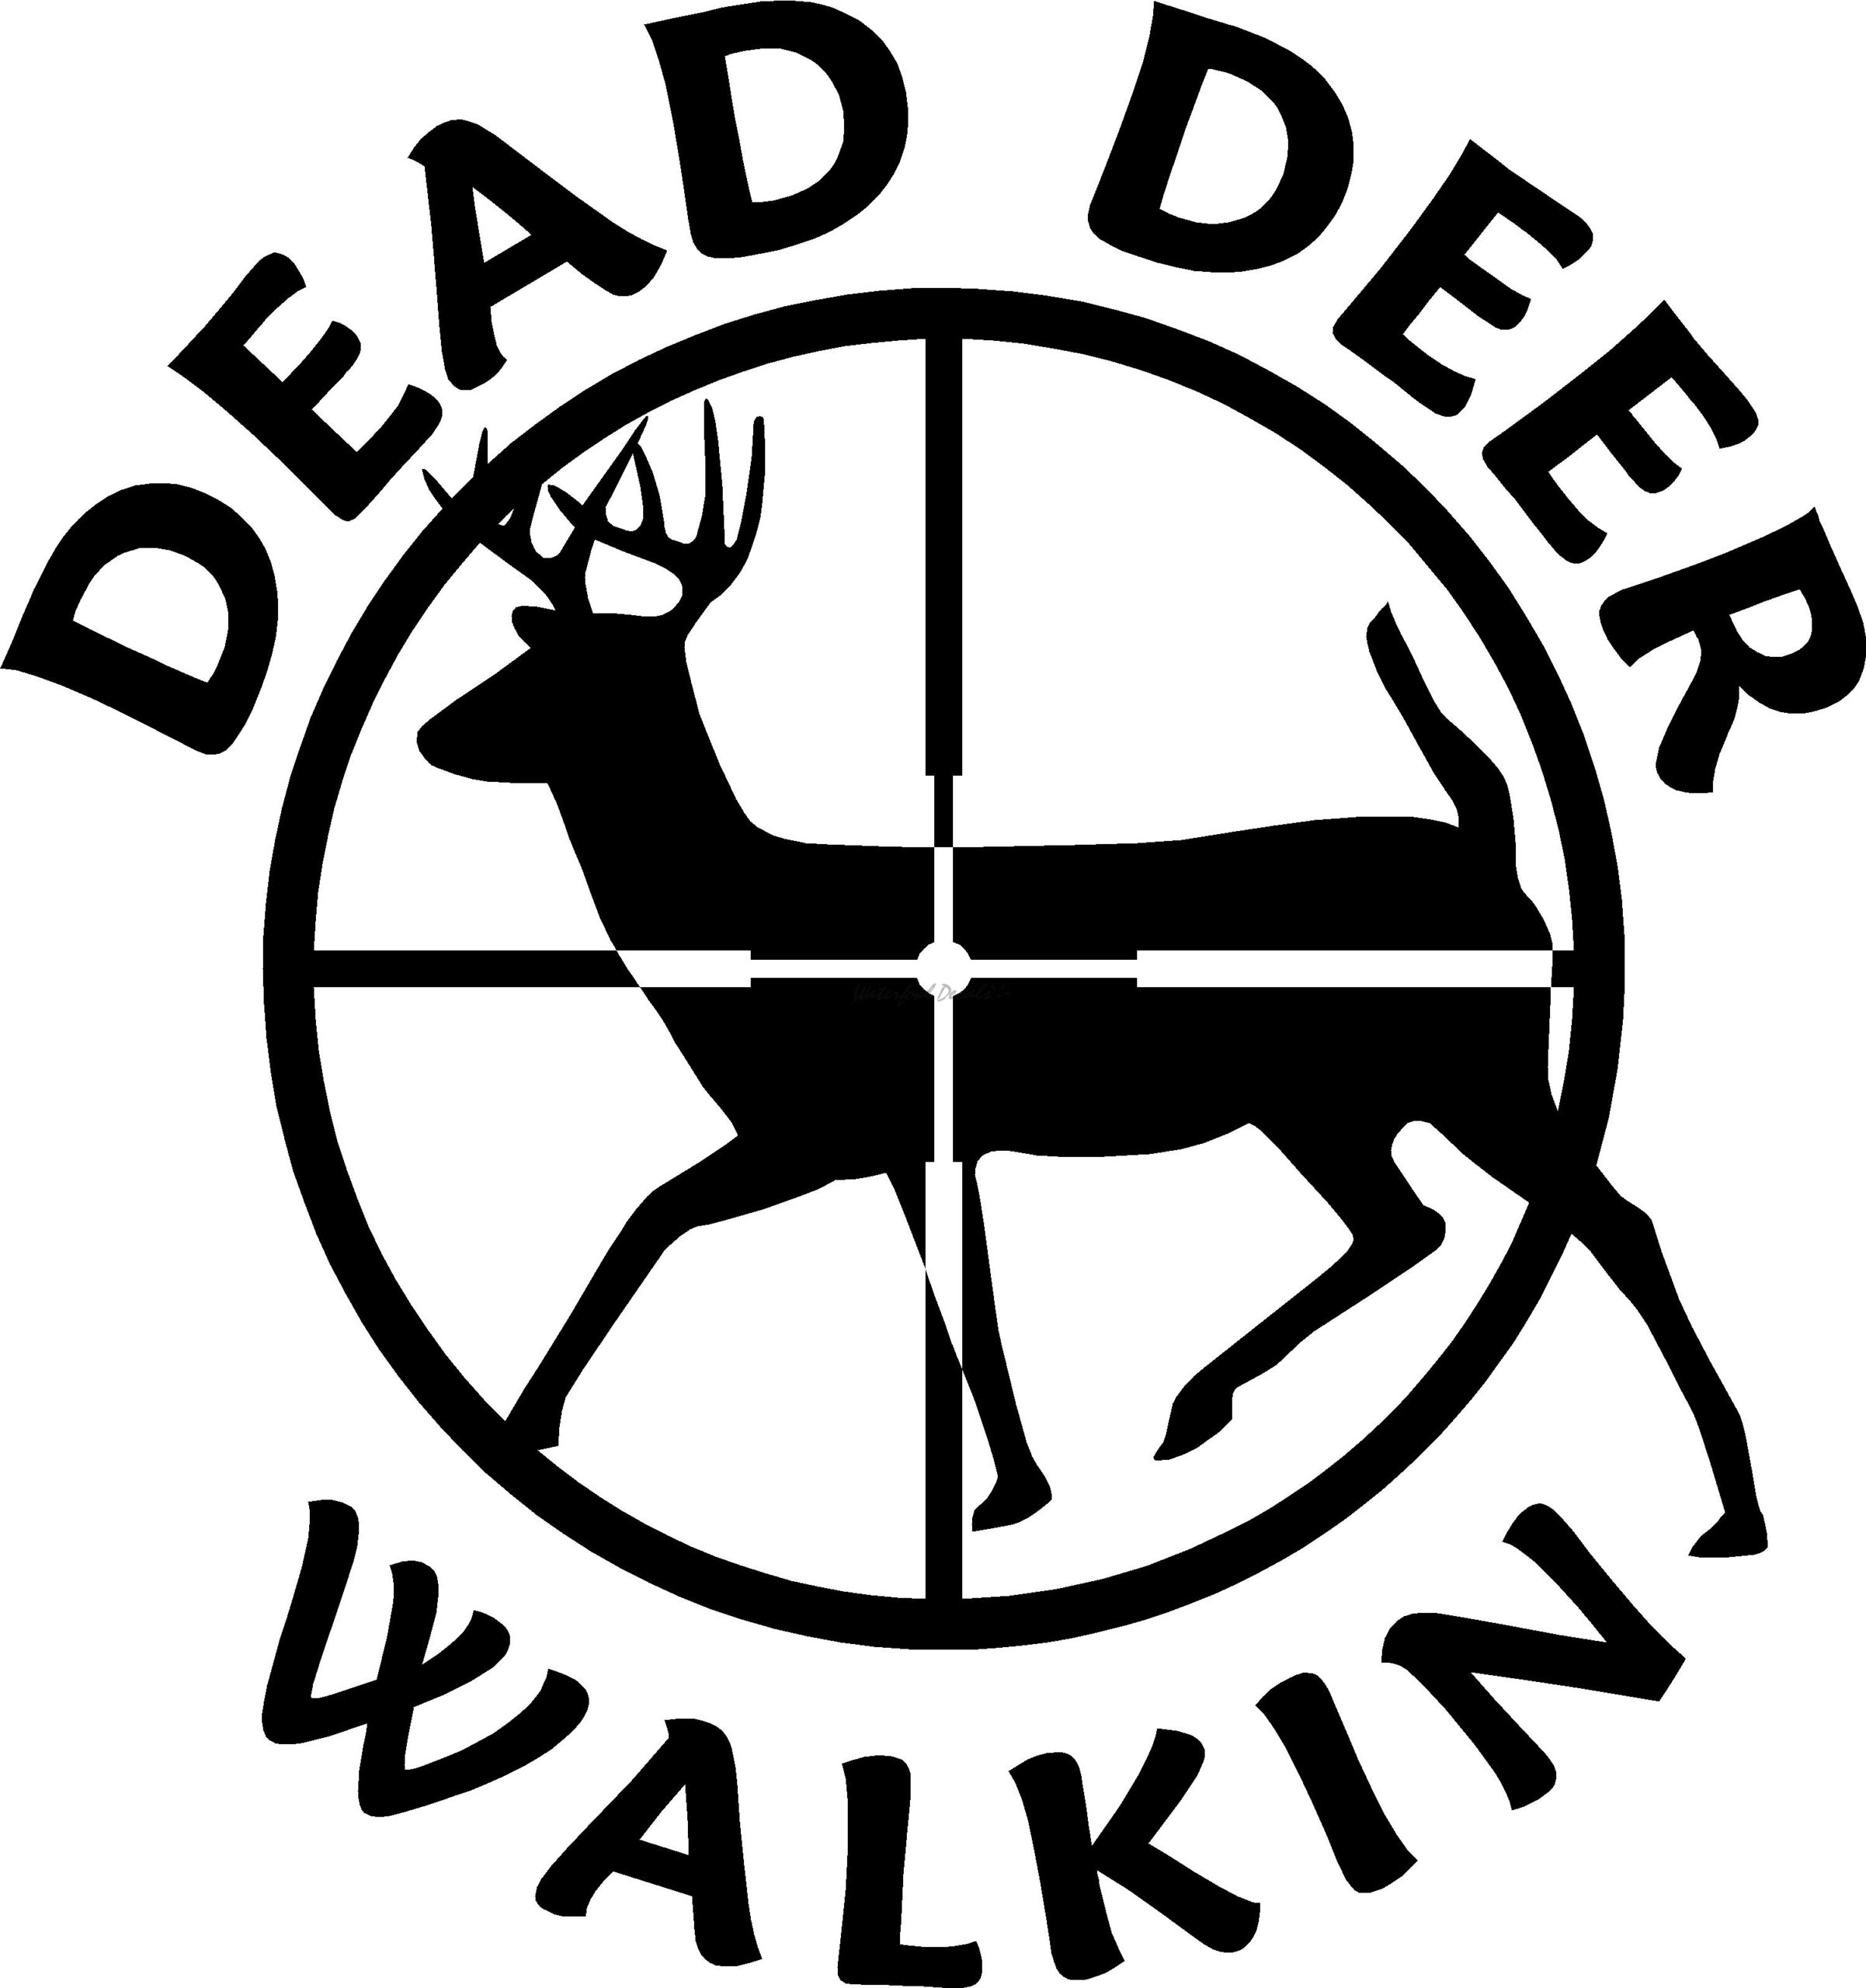 Dead Deer Walkin - Deer Hunting Decal - 15010